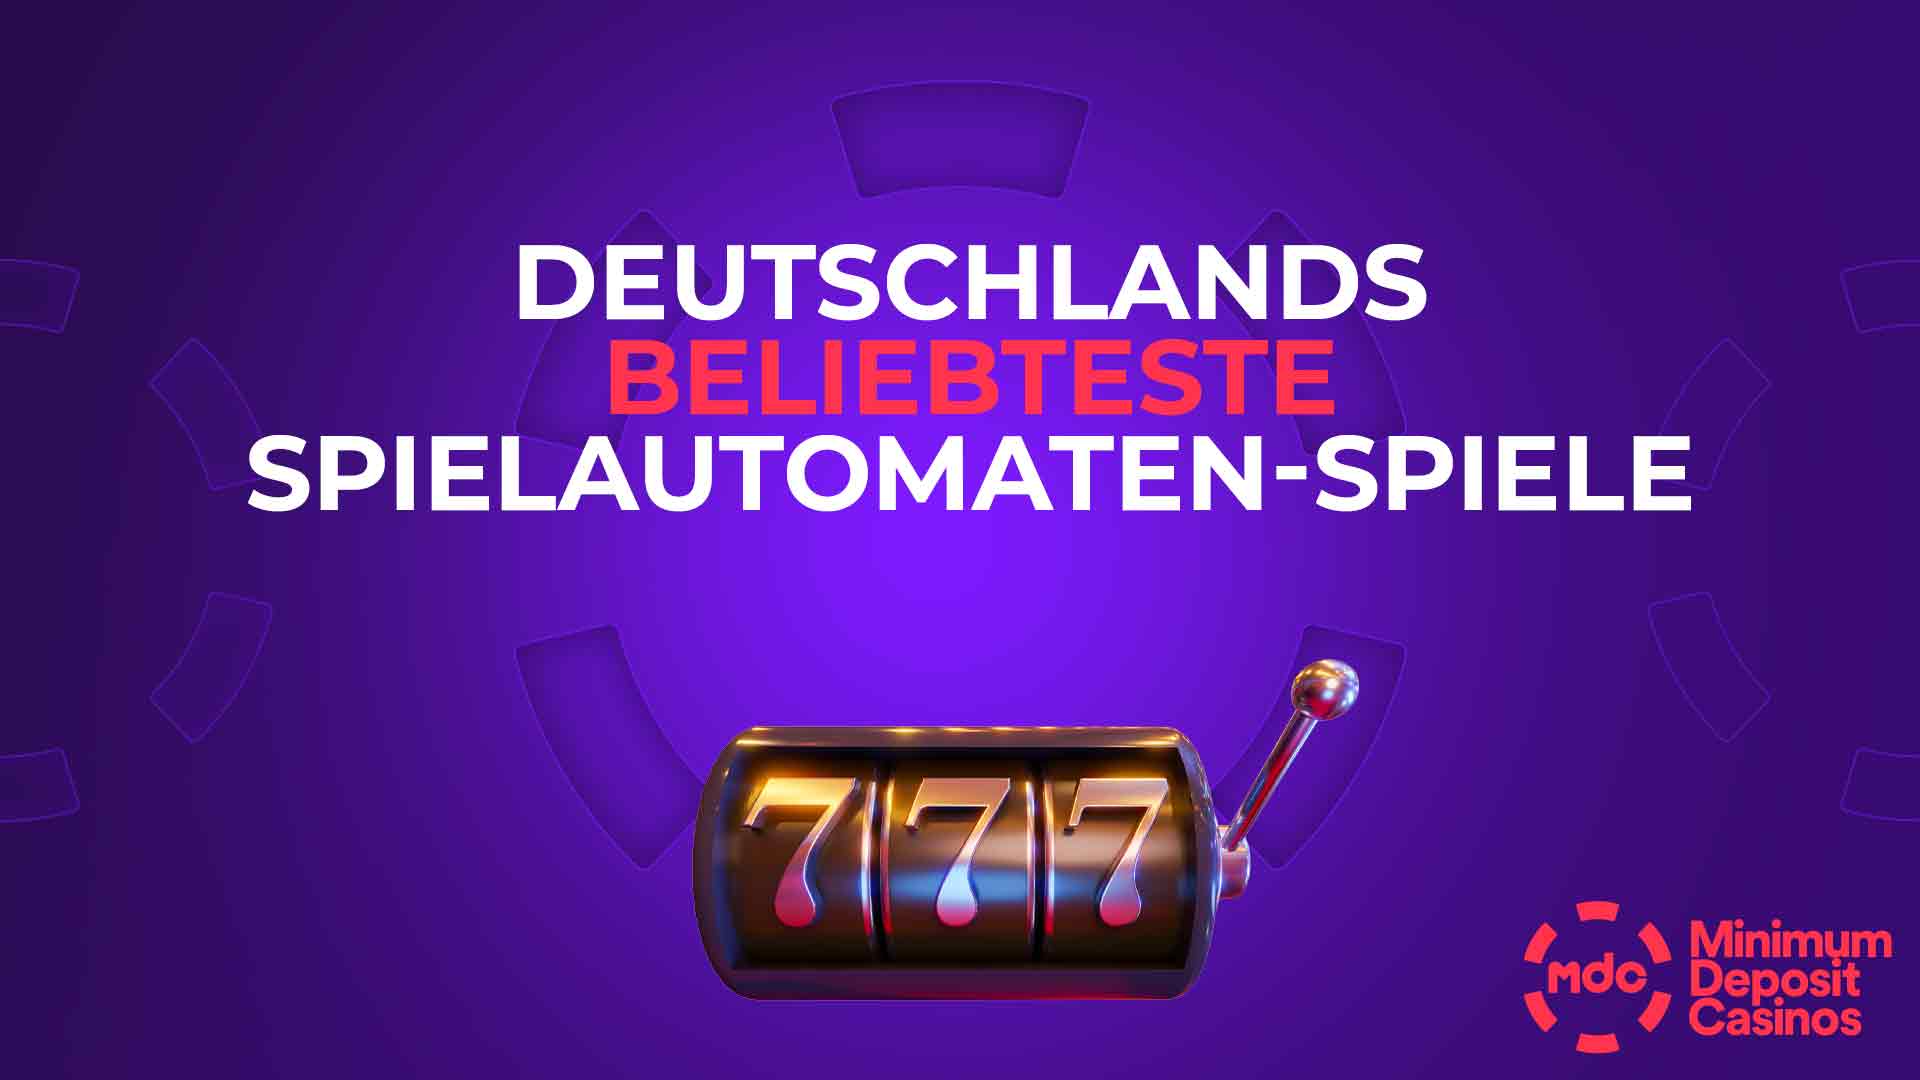 Deutschlands beliebteste Spielautomaten-Spiele